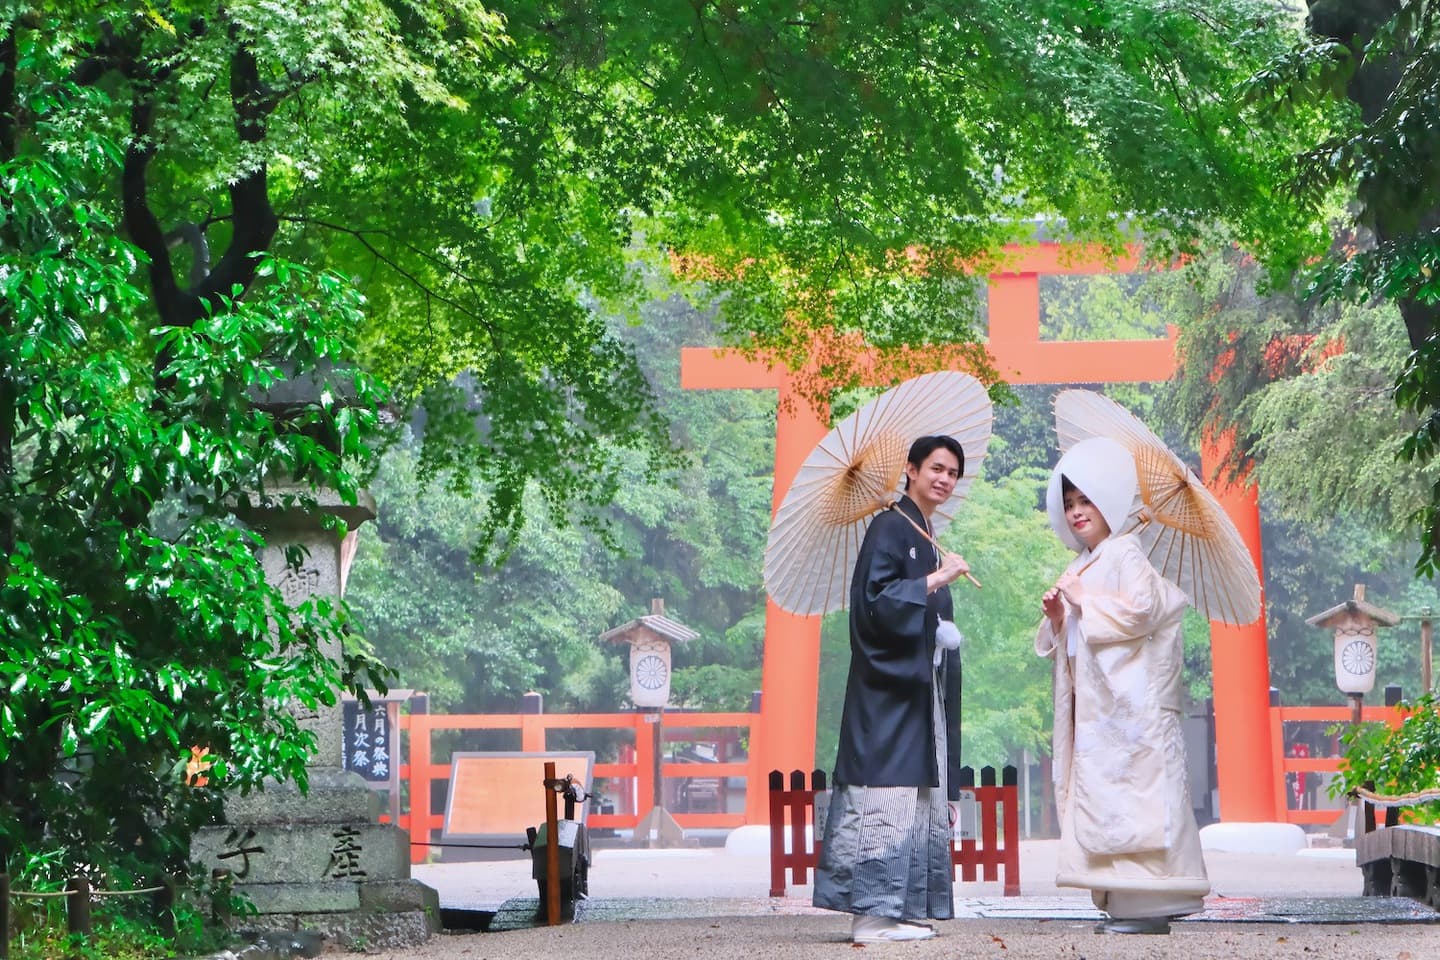 下鴨神社での神前結婚式の写真